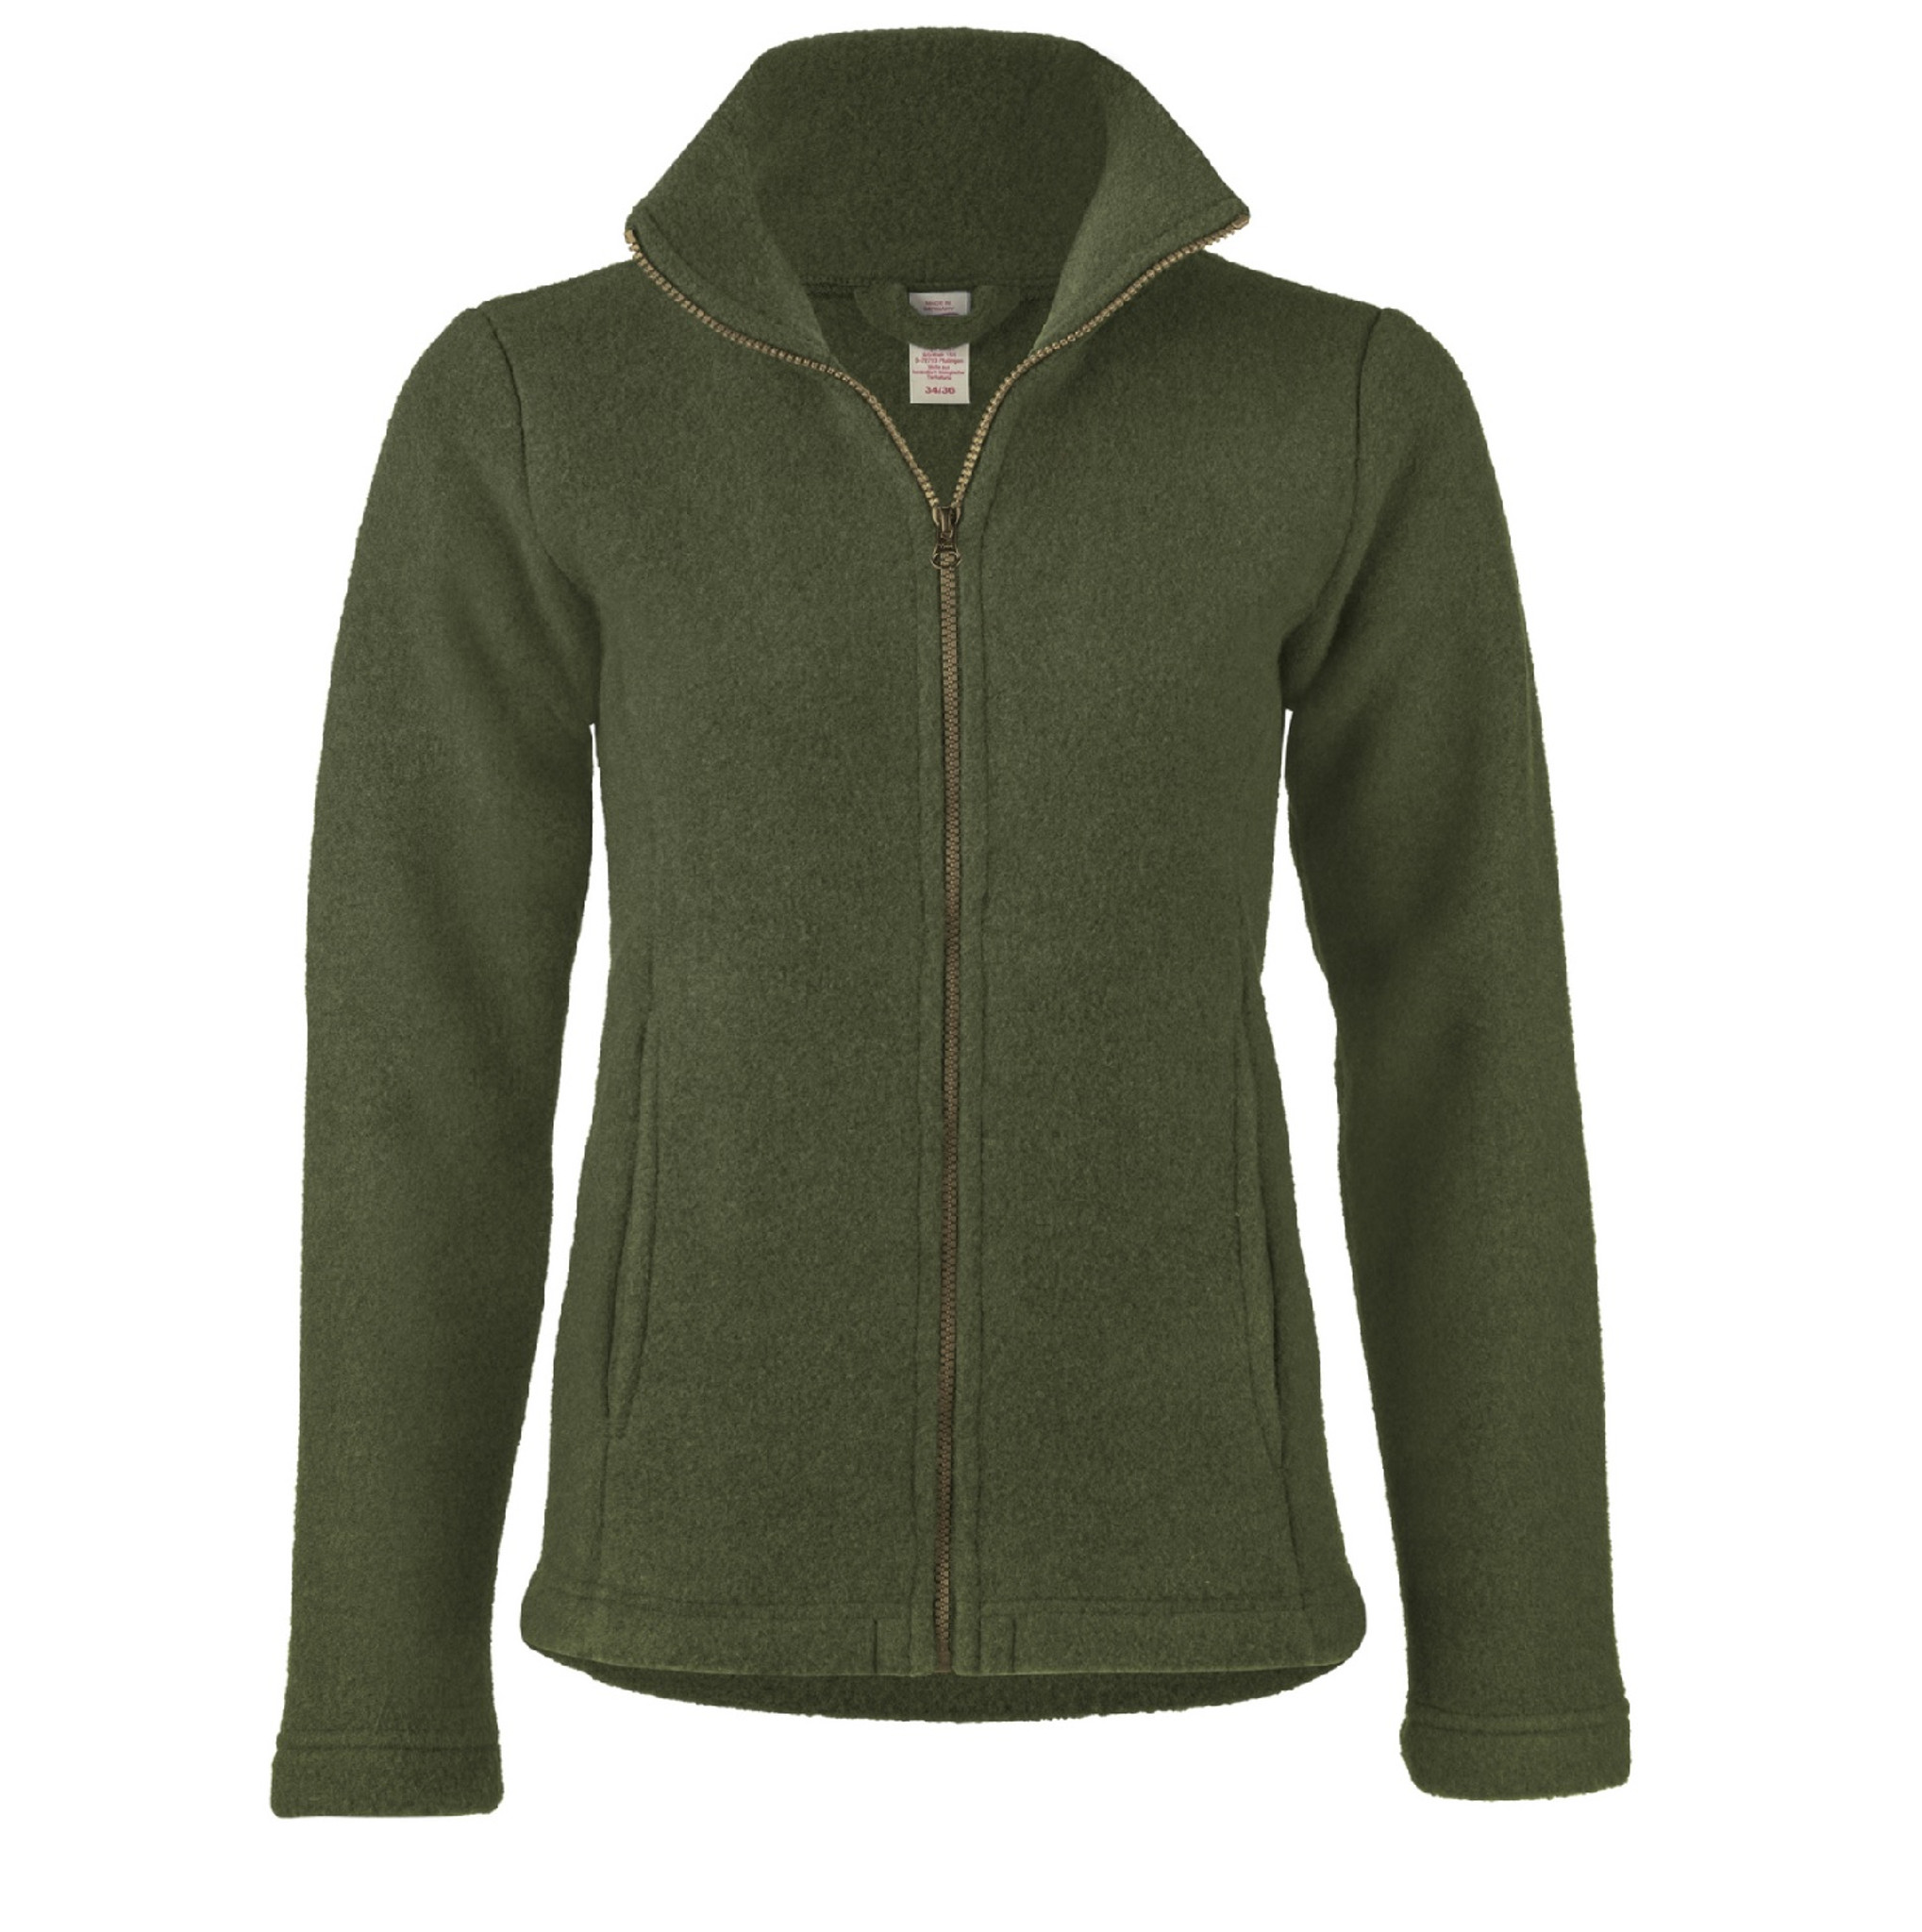 Engel Organic Thick Wool Fleece Women's Jacket - Little Spruce